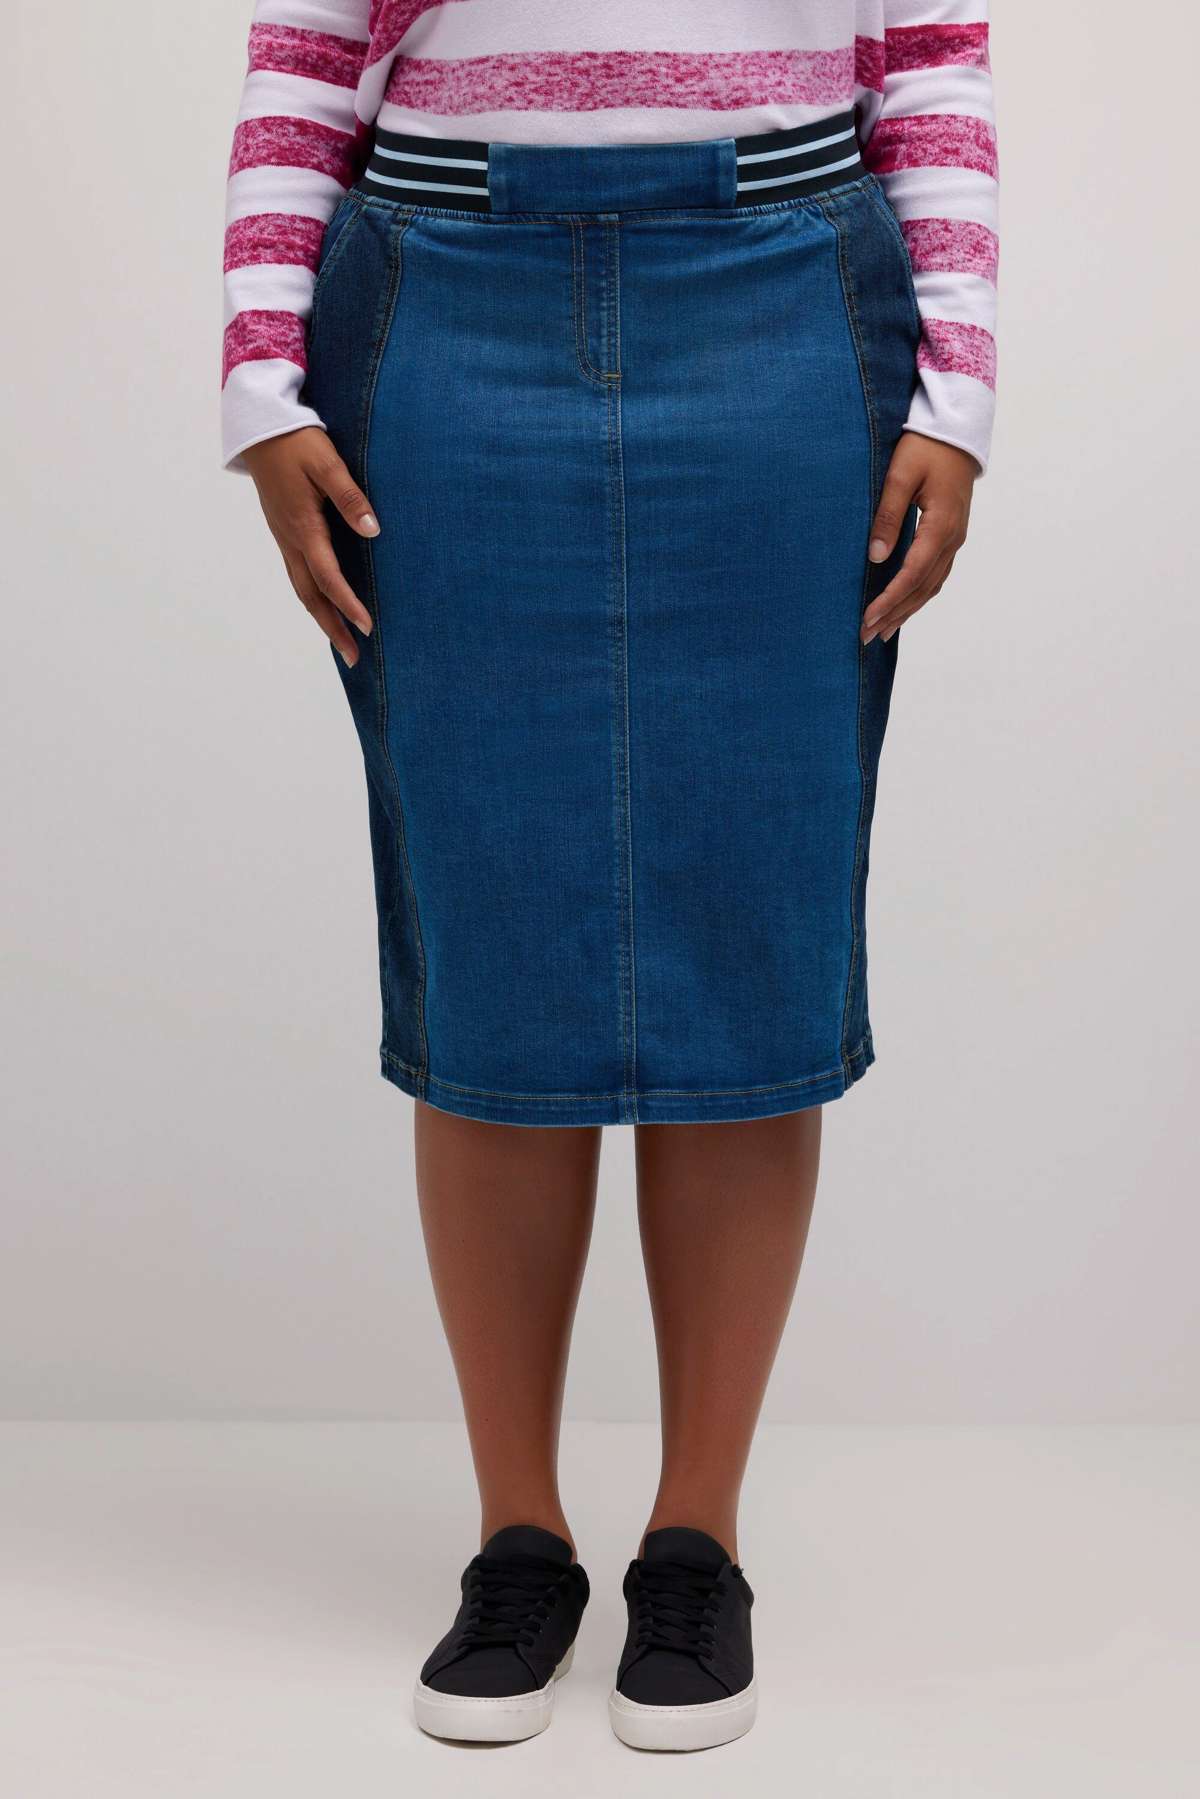 Джинсовая юбка Джинсовая юбка миди, двухцветный продольный шов, эластичный пояс